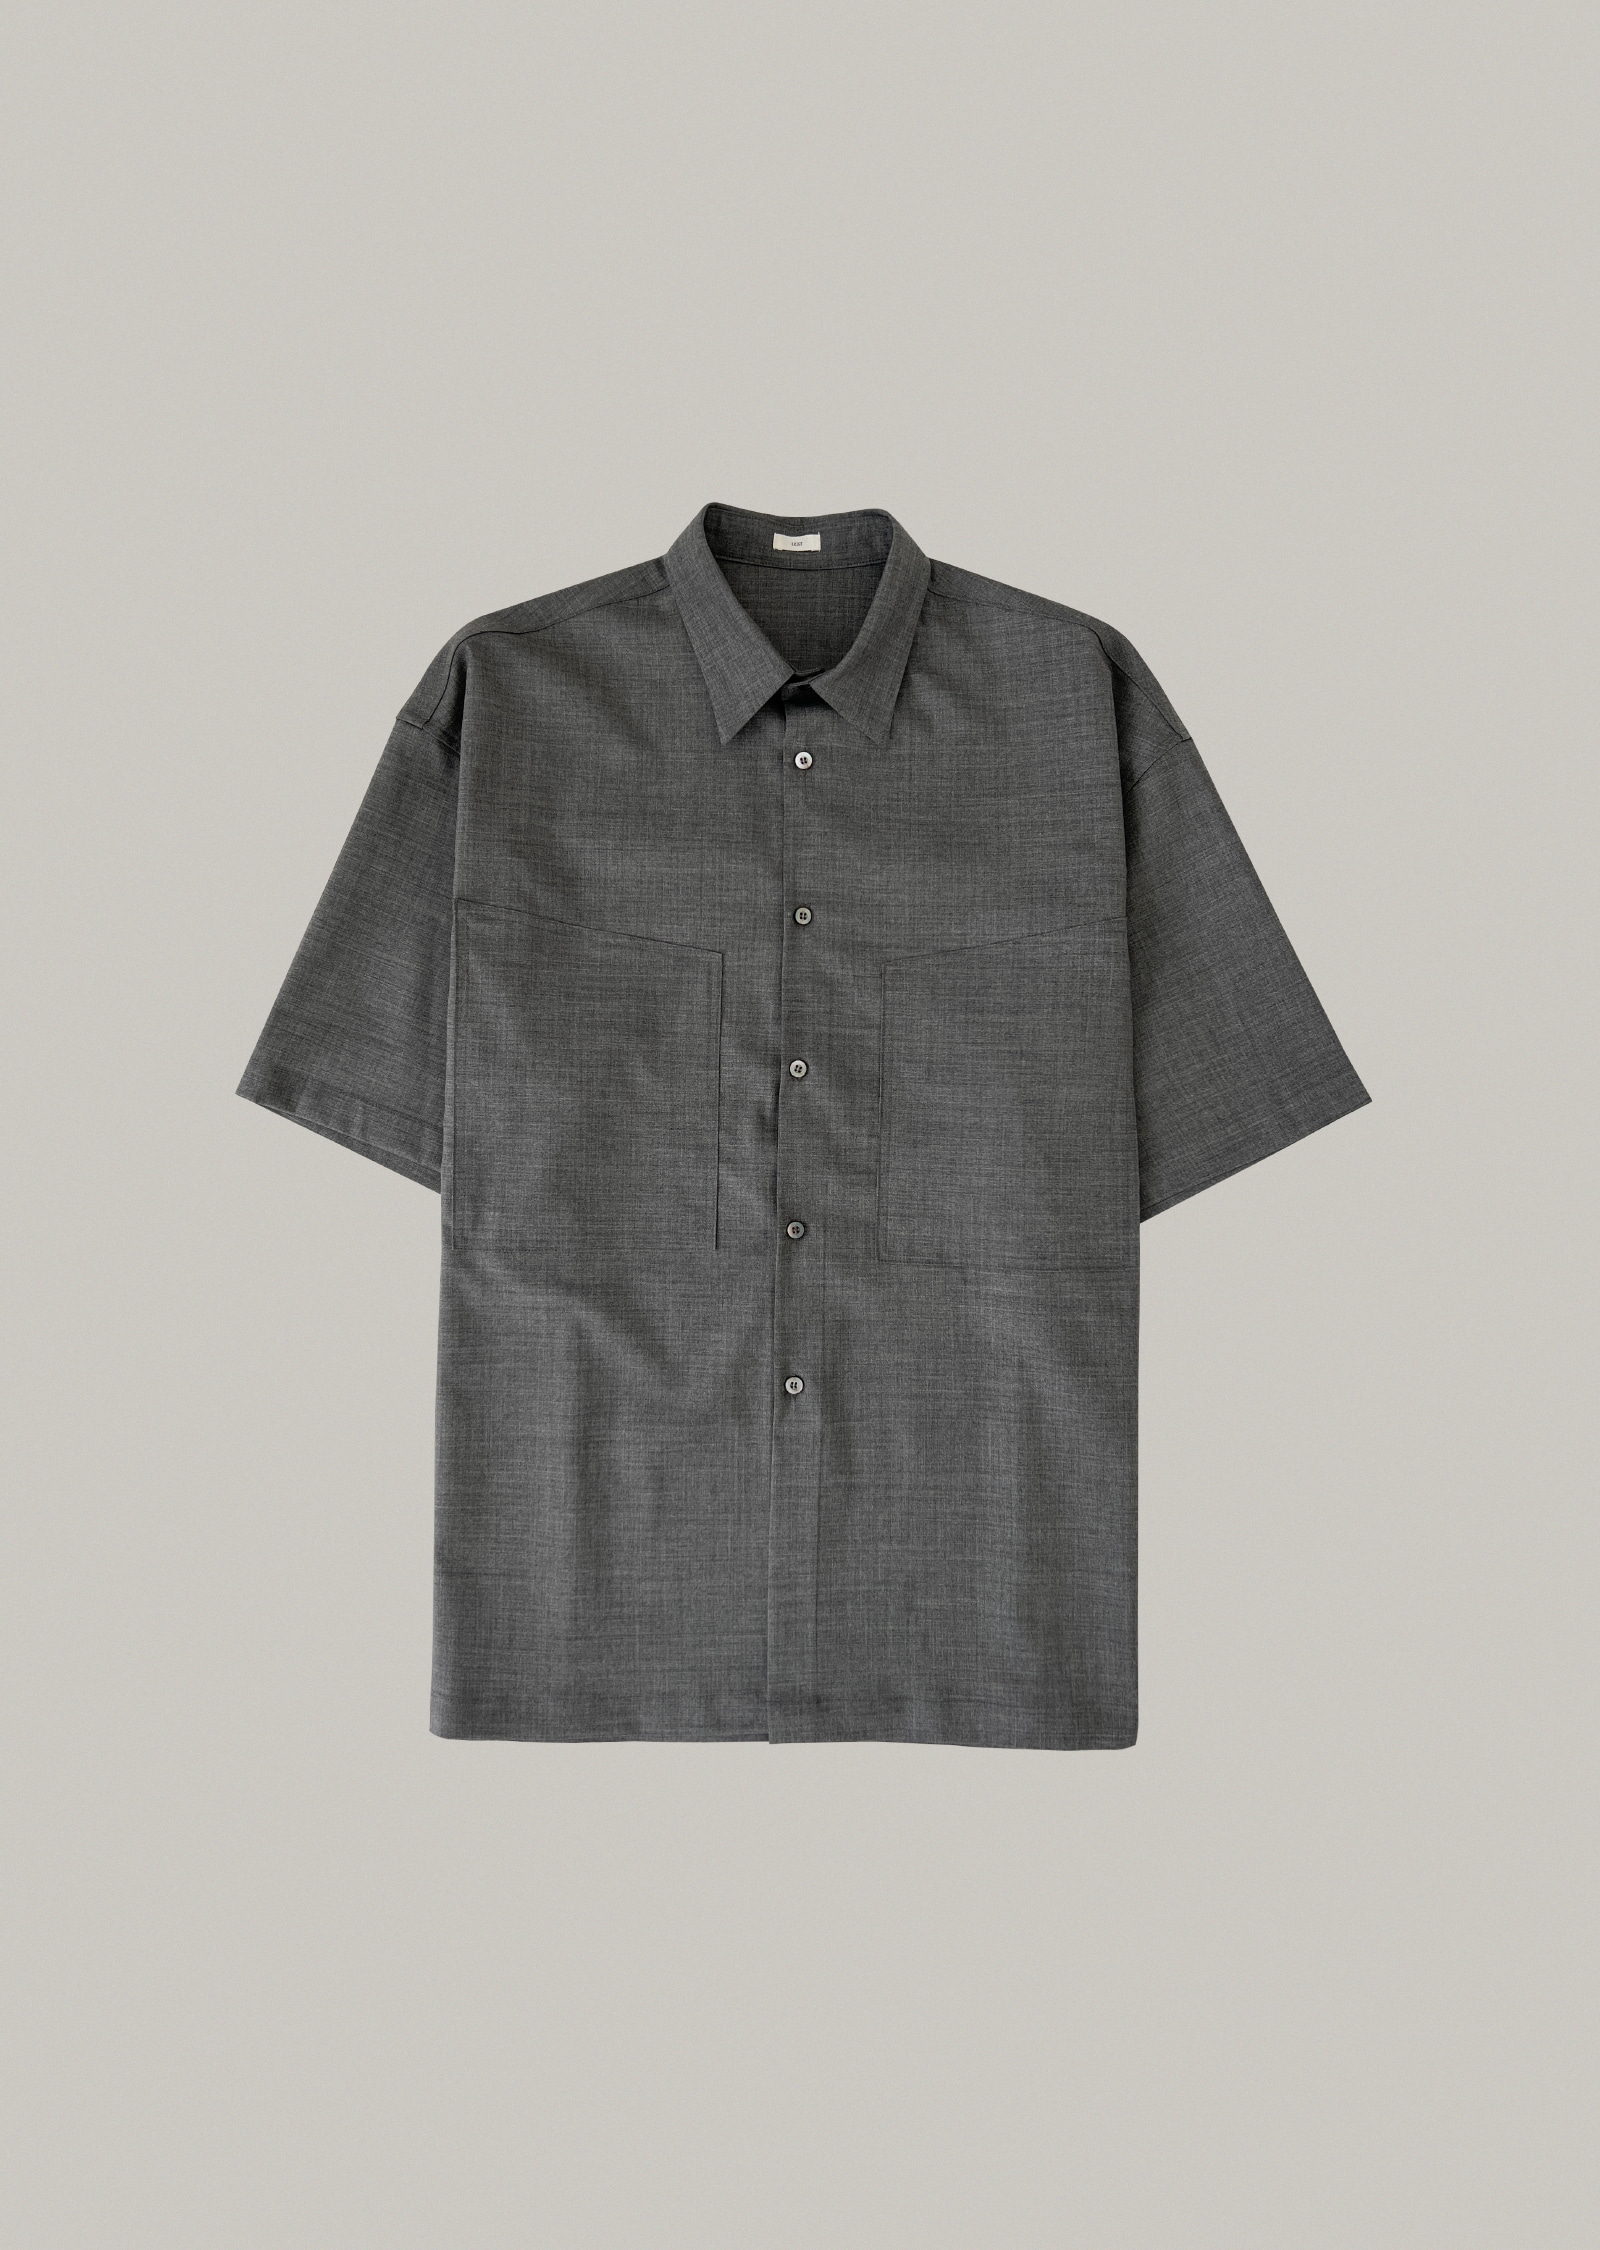 summer wool shirt (charcoal)